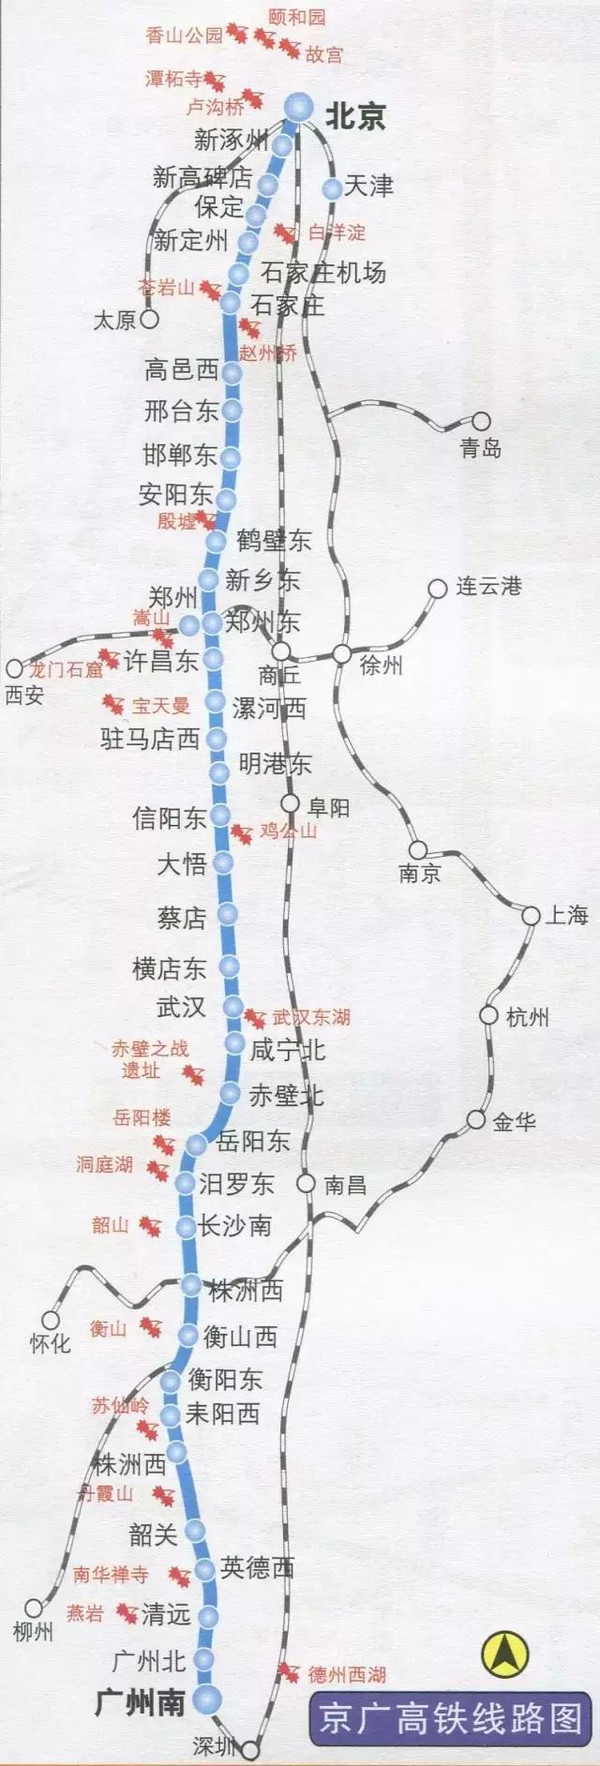 老京九铁路线路图图片